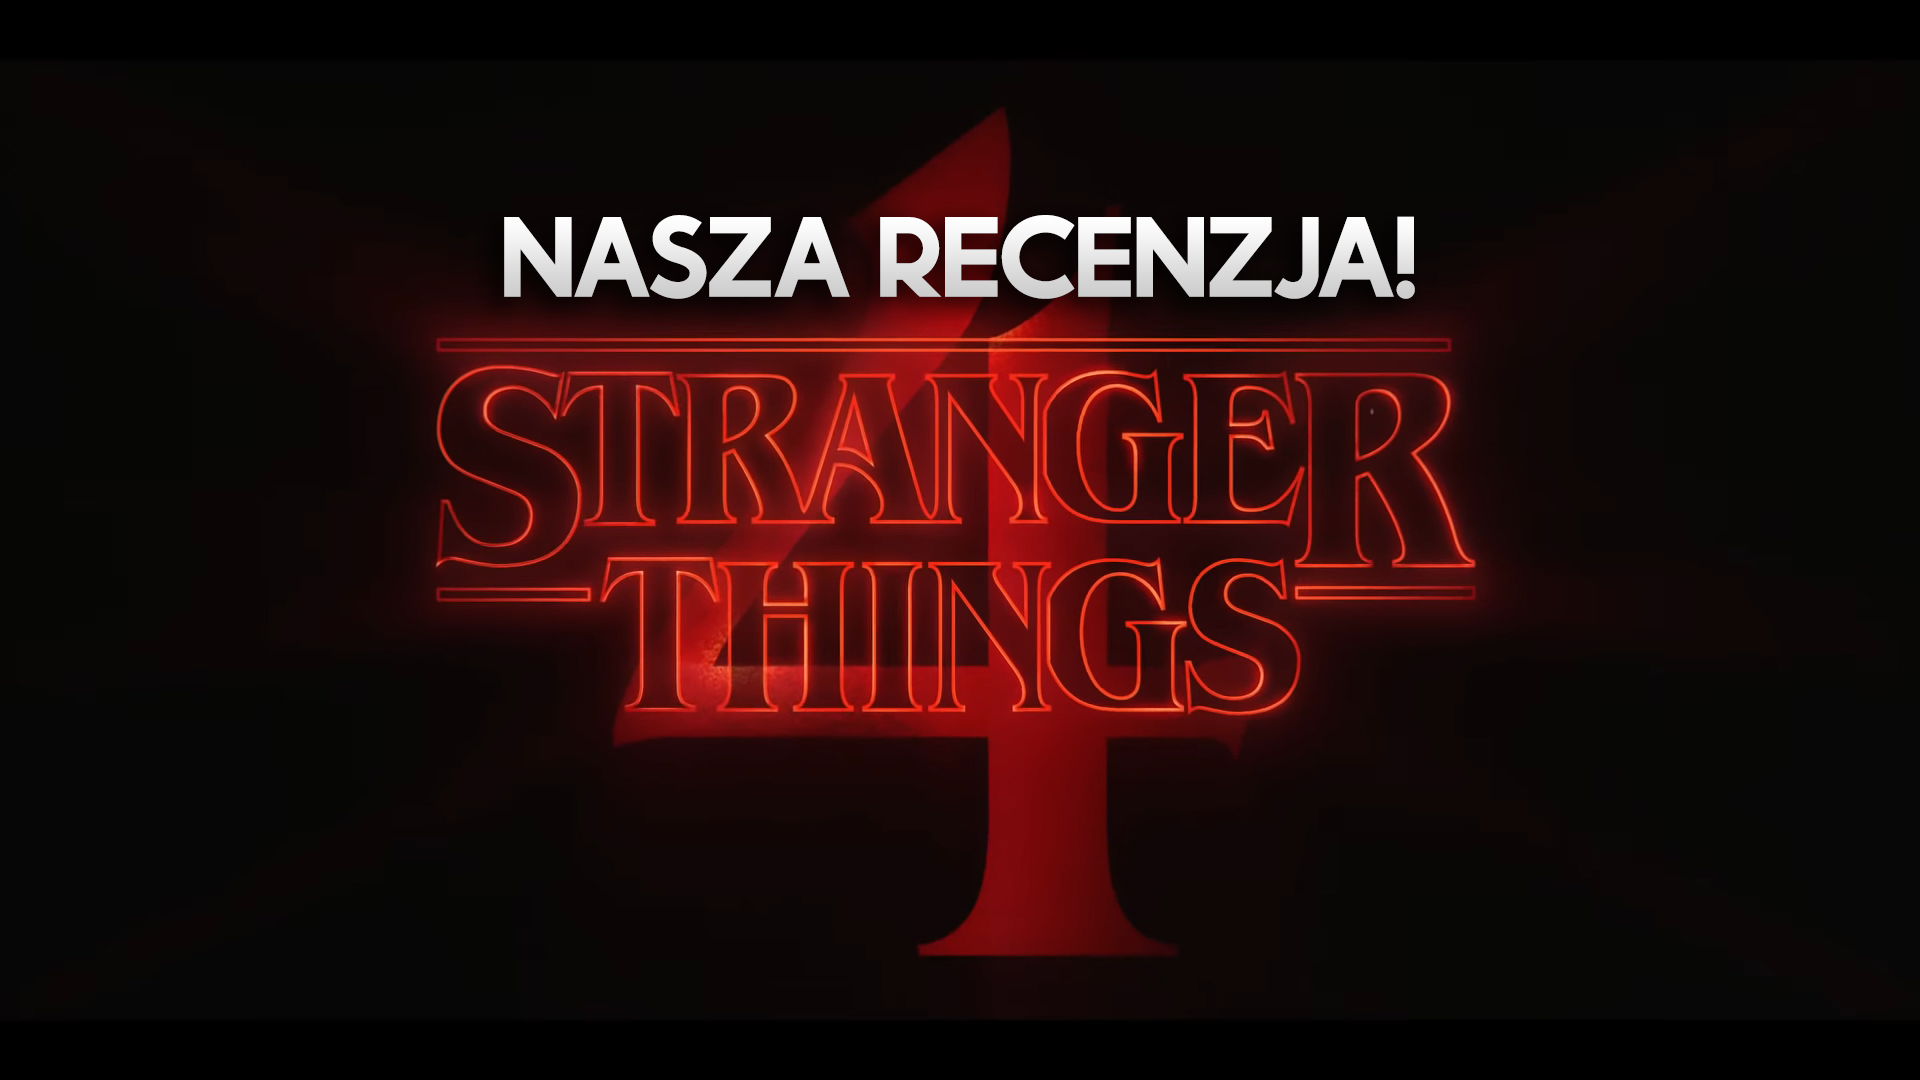 Obejrzeliśmy Stranger Things 4 przed premierą! Czego oczekiwać? Czy nowy sezon spełnia oczekiwania?